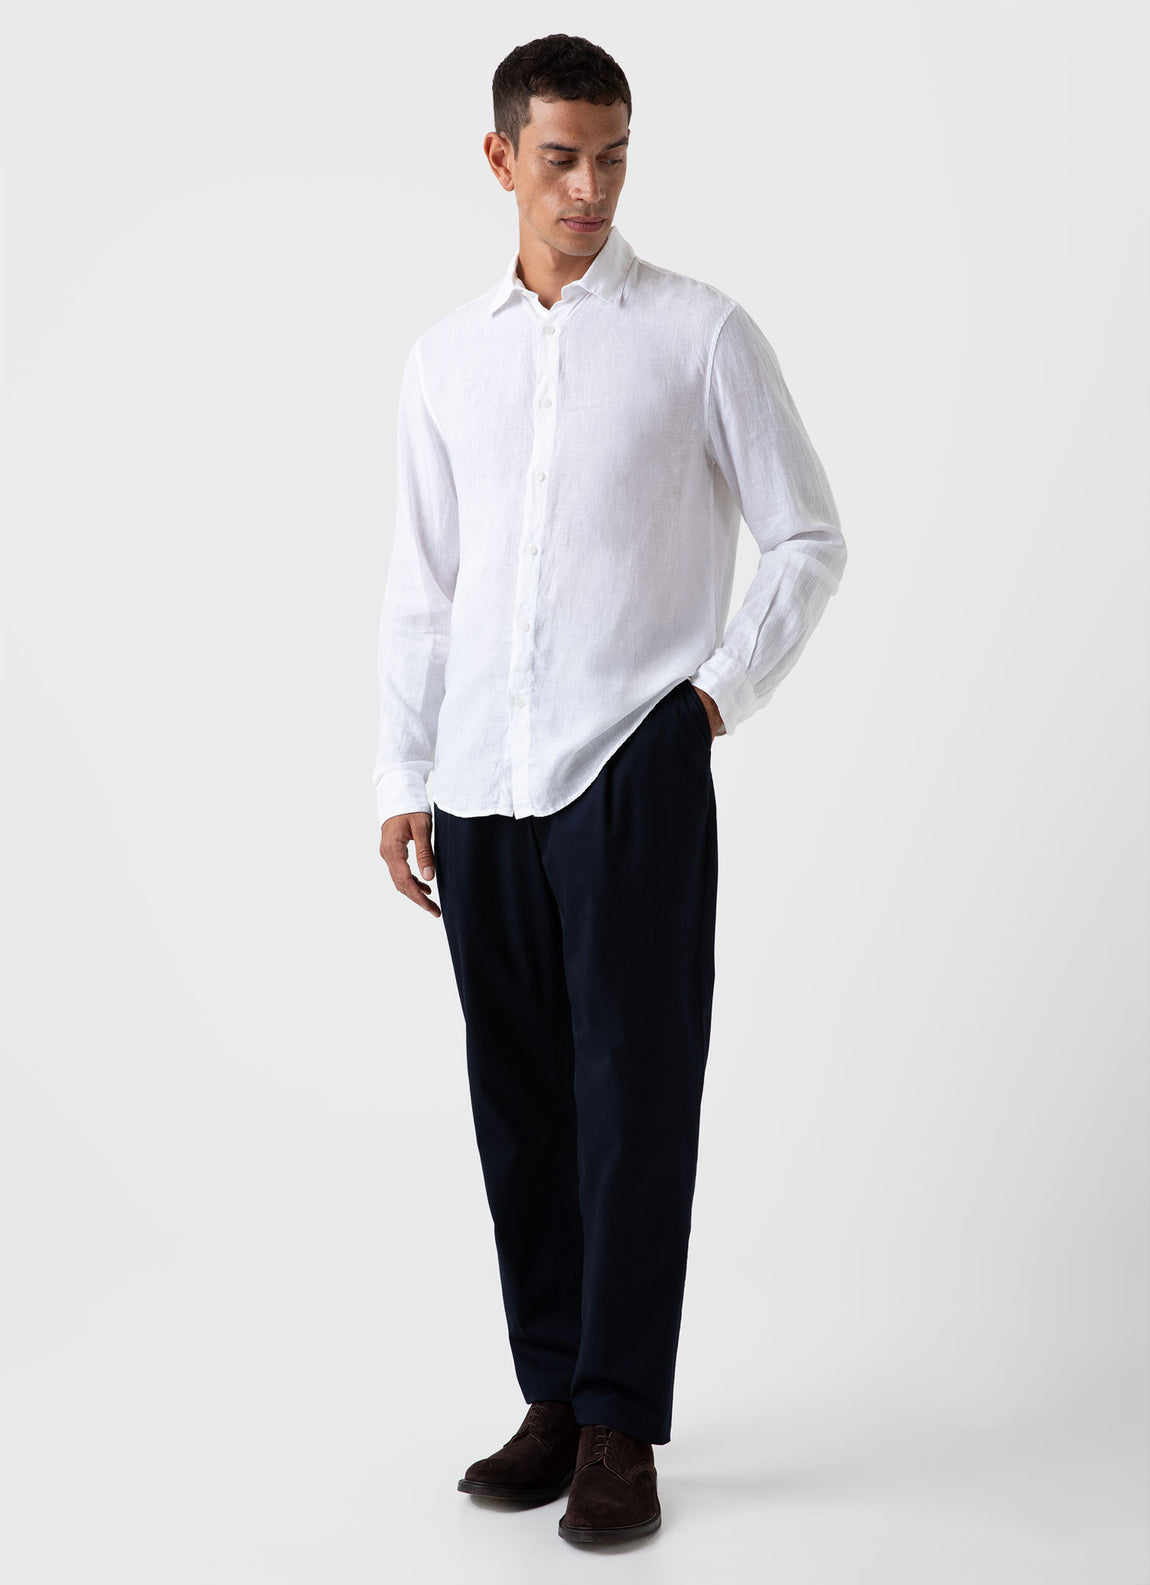 Men's Linen Shirt in White | Sunspel